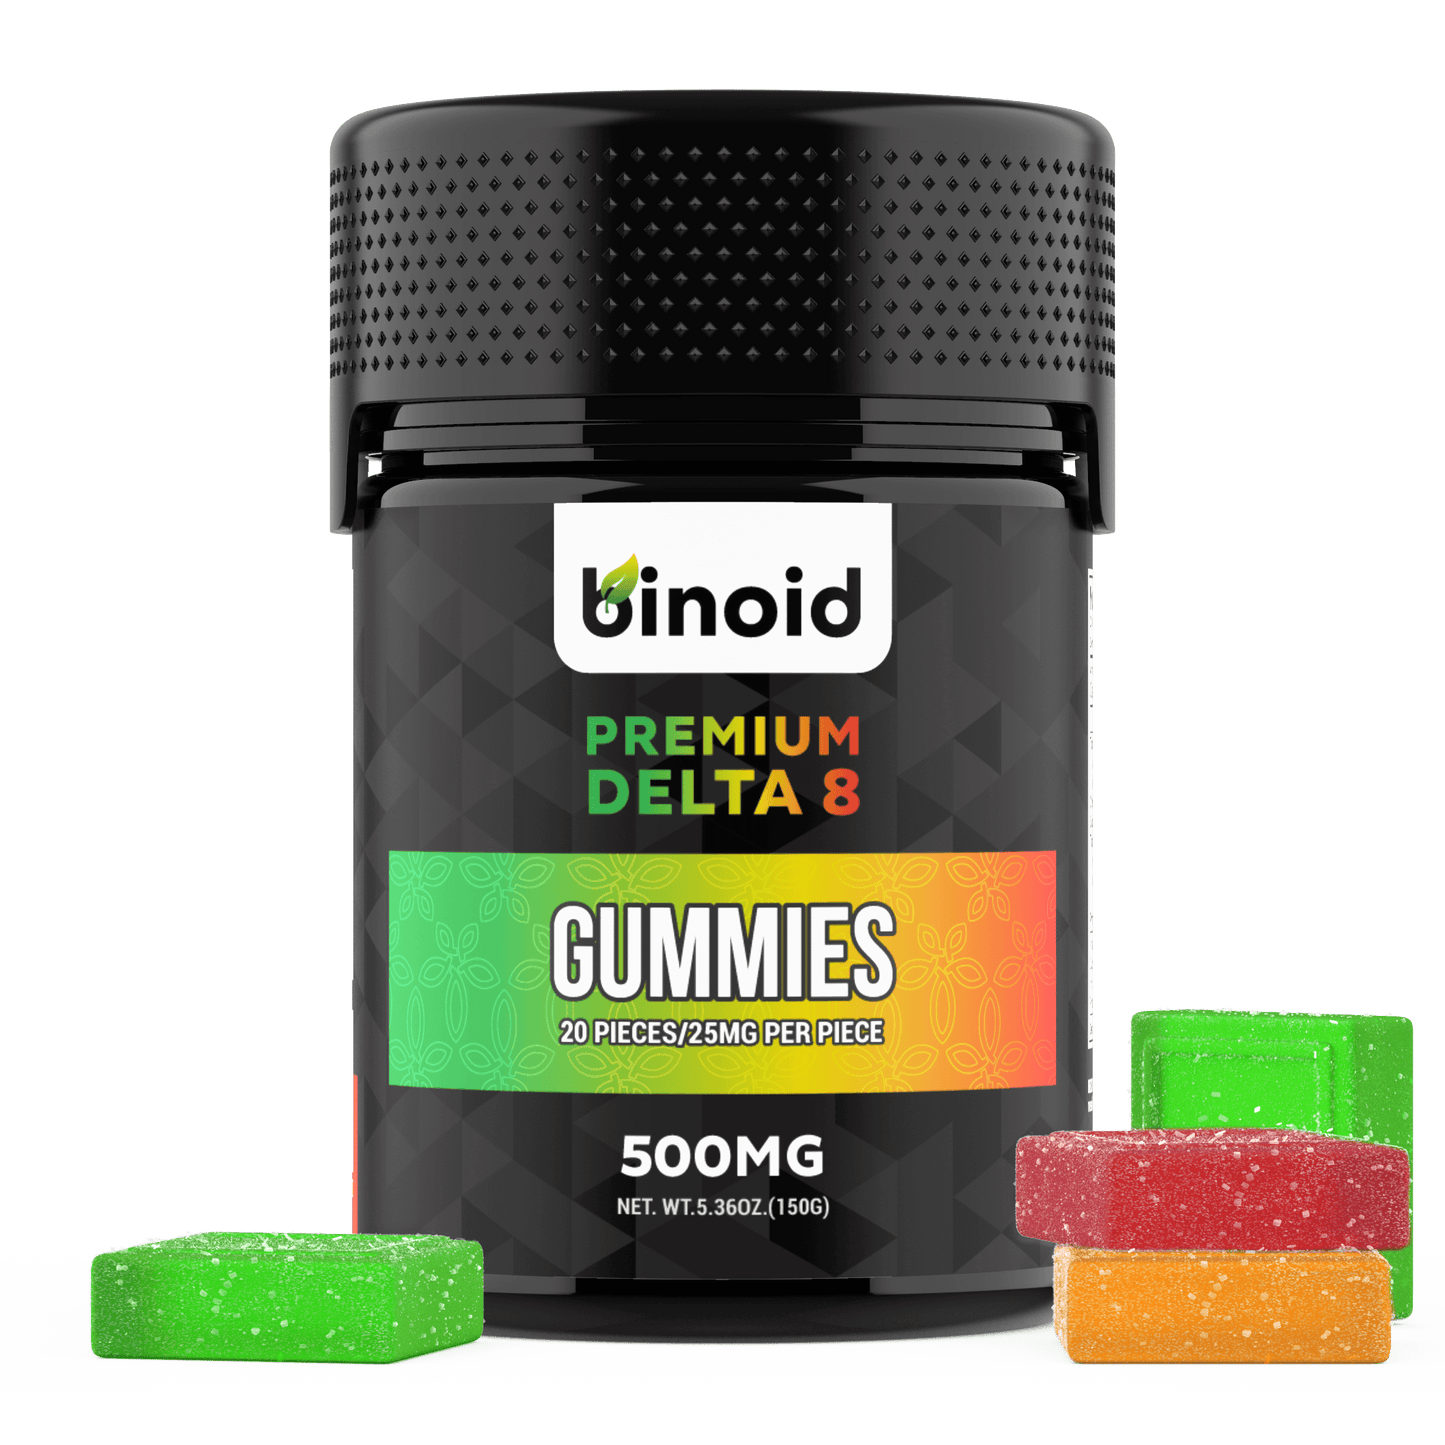 Binoid Delta 8 THC Gummies Best Sales Price - Gummies